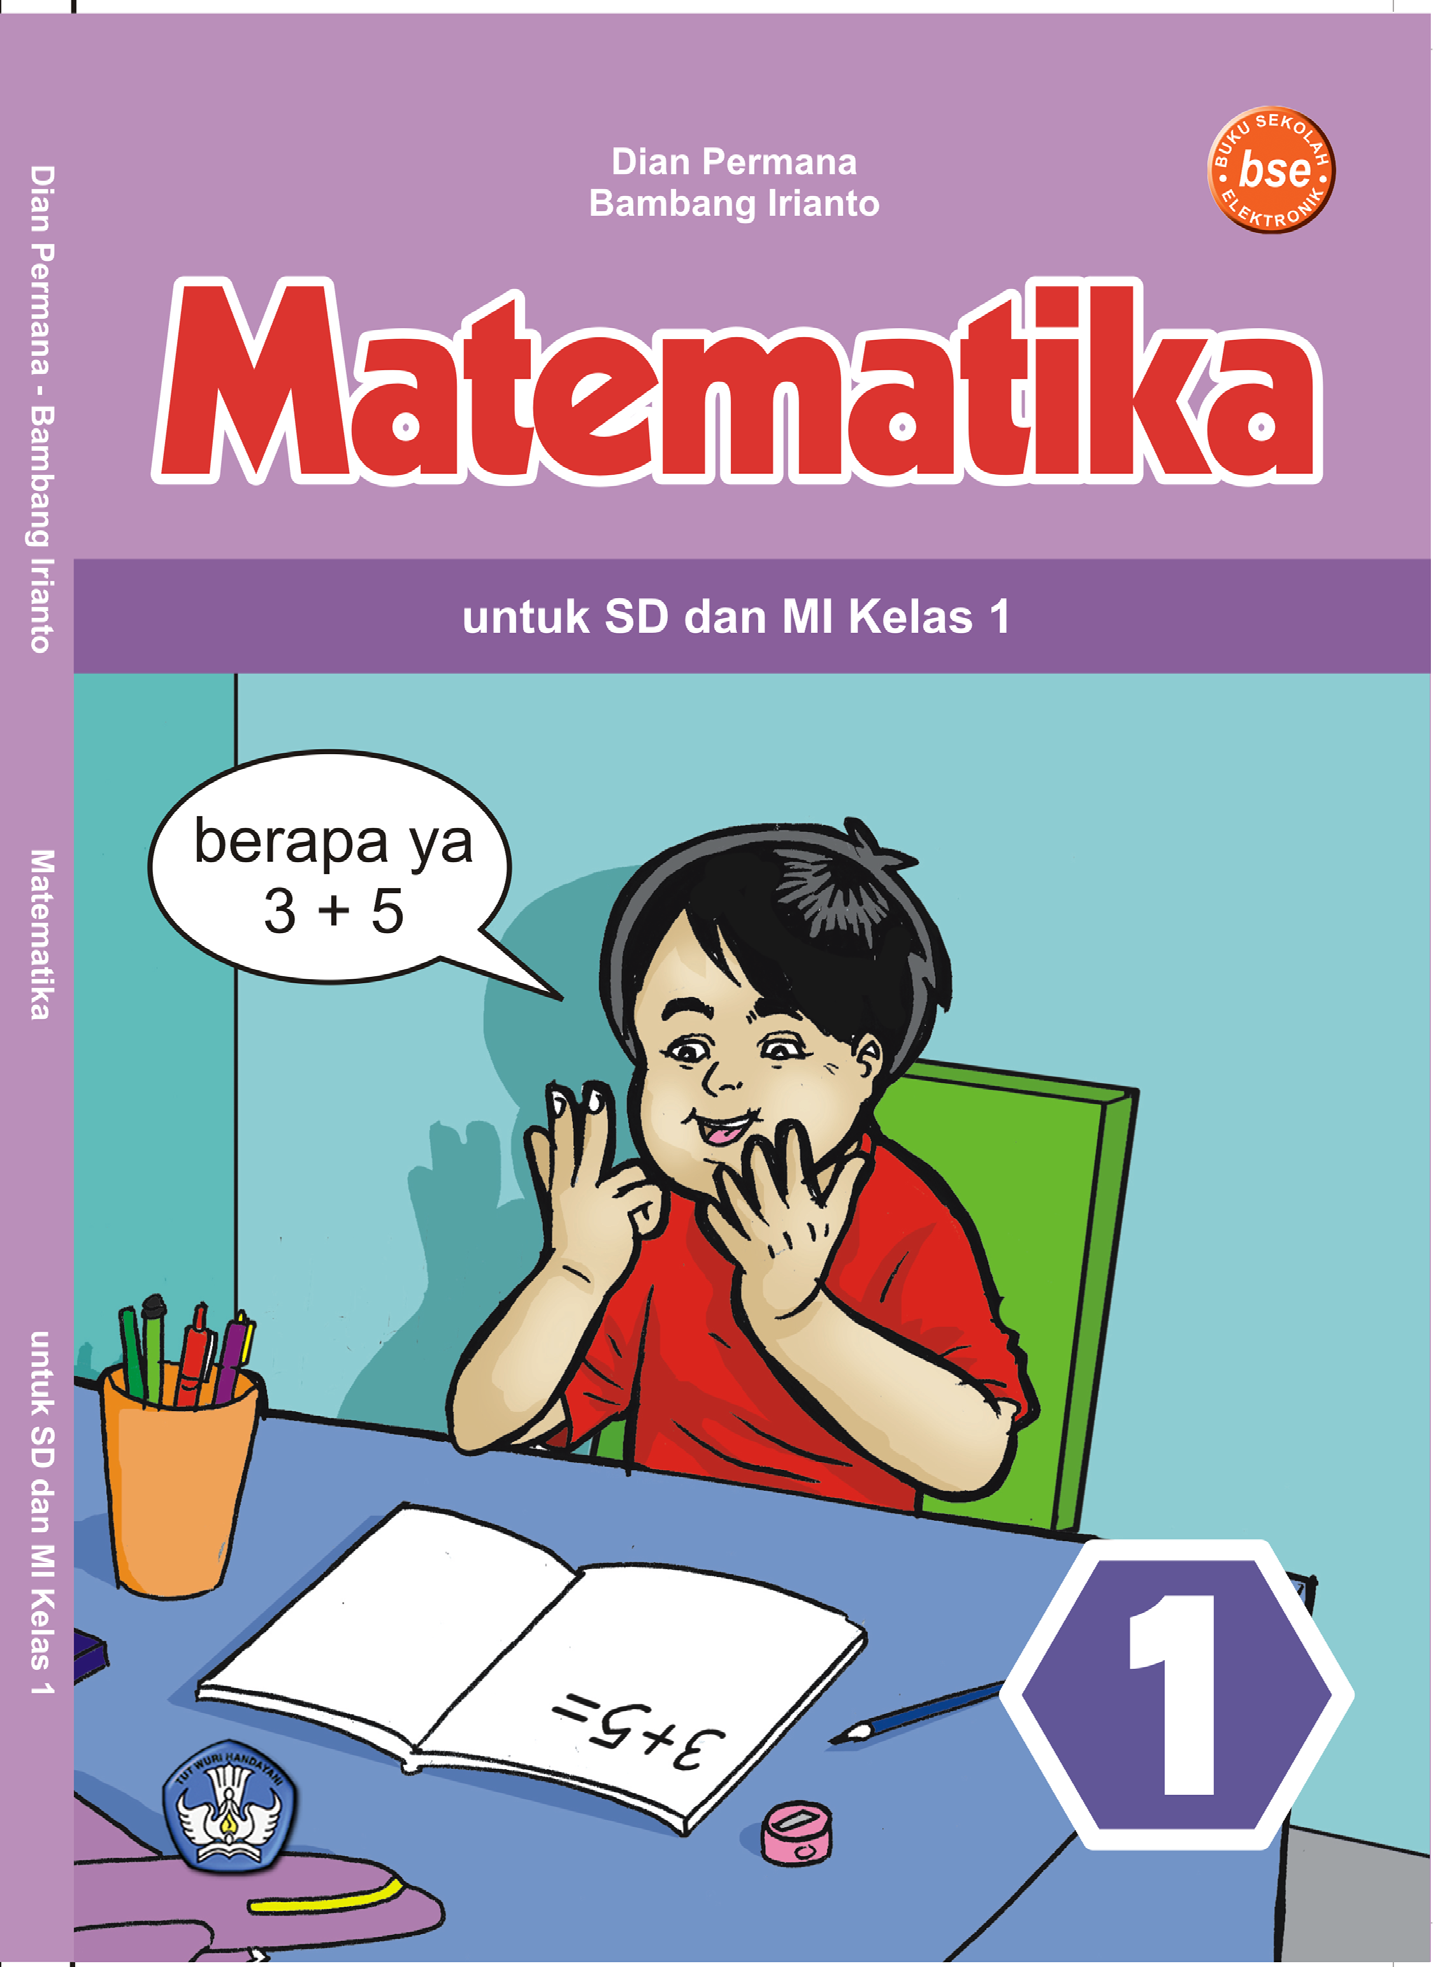 Matematika Untuk Sd Dan Mi Kelas 1 Dian Permana Bambang Irianto Pdf Download Gratis